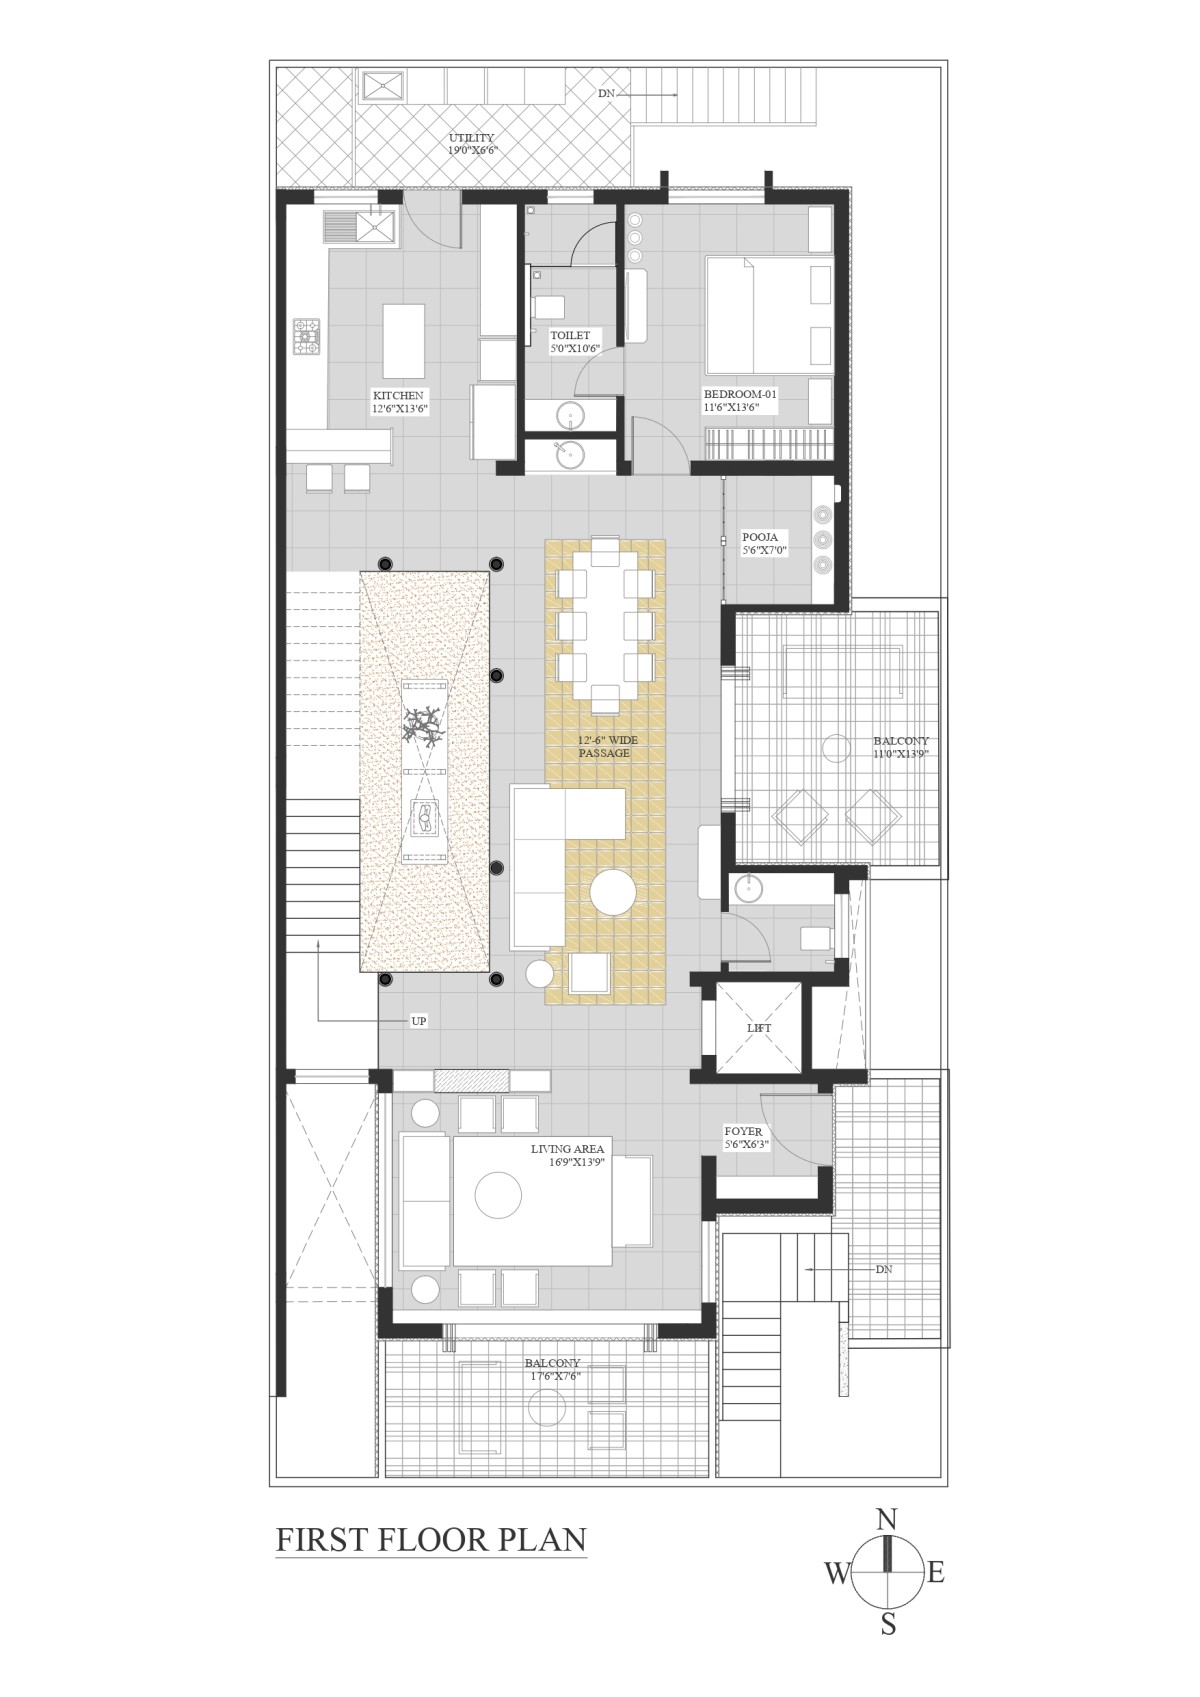 First floor plan of An Indian Abode by K.N. Associates